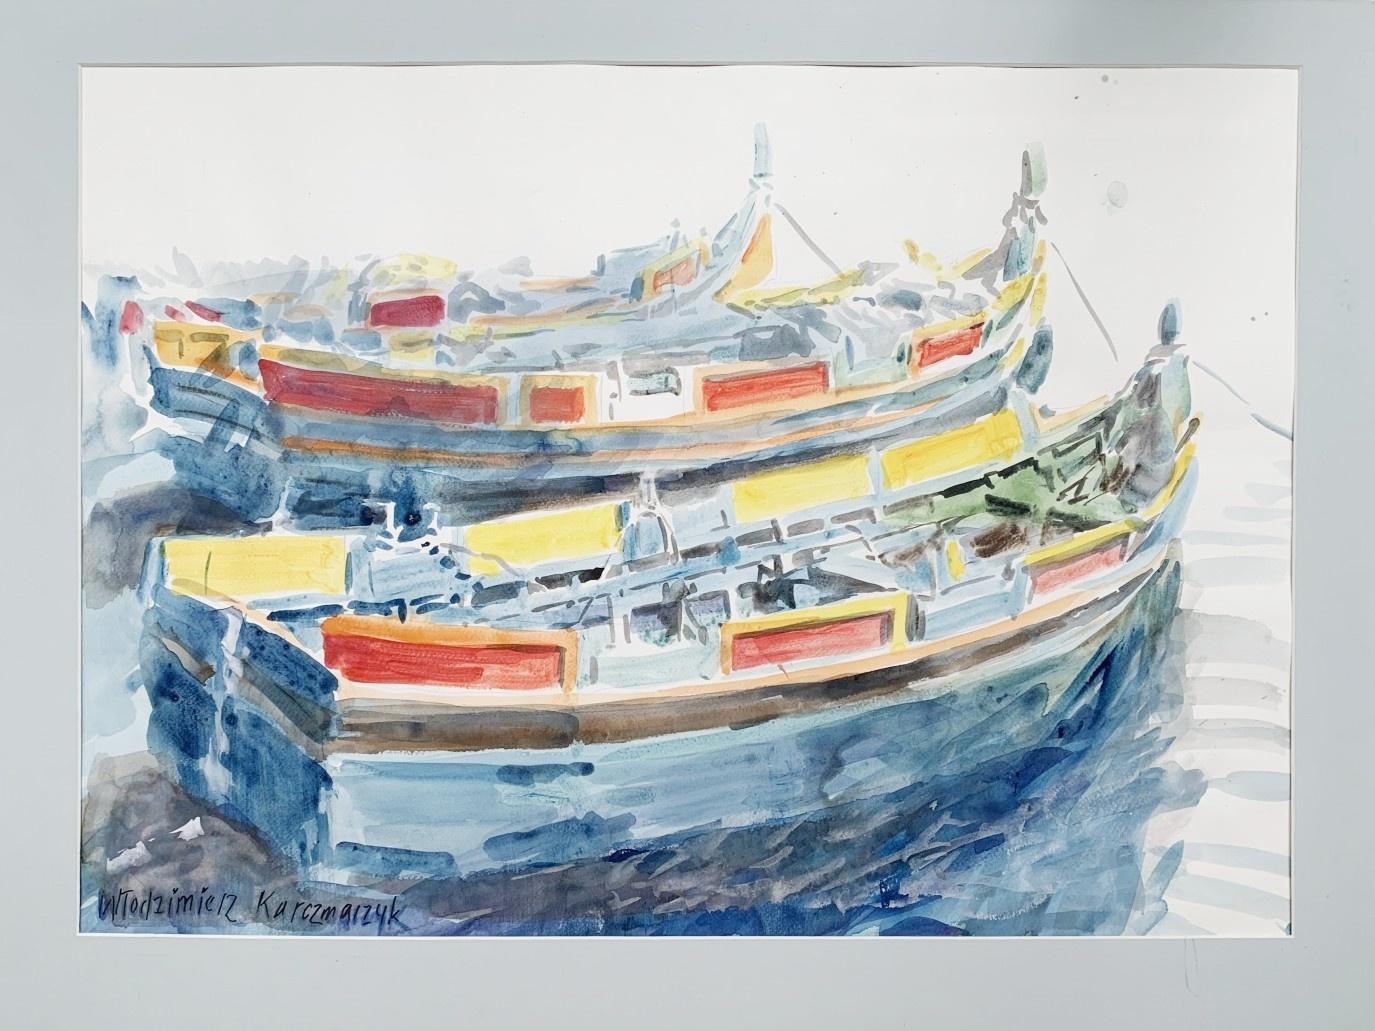 Maltan boats - Watercolor, Architecture, Realistic, Classic, Polish artist - Art by Włodzimierz Karczmarzyk